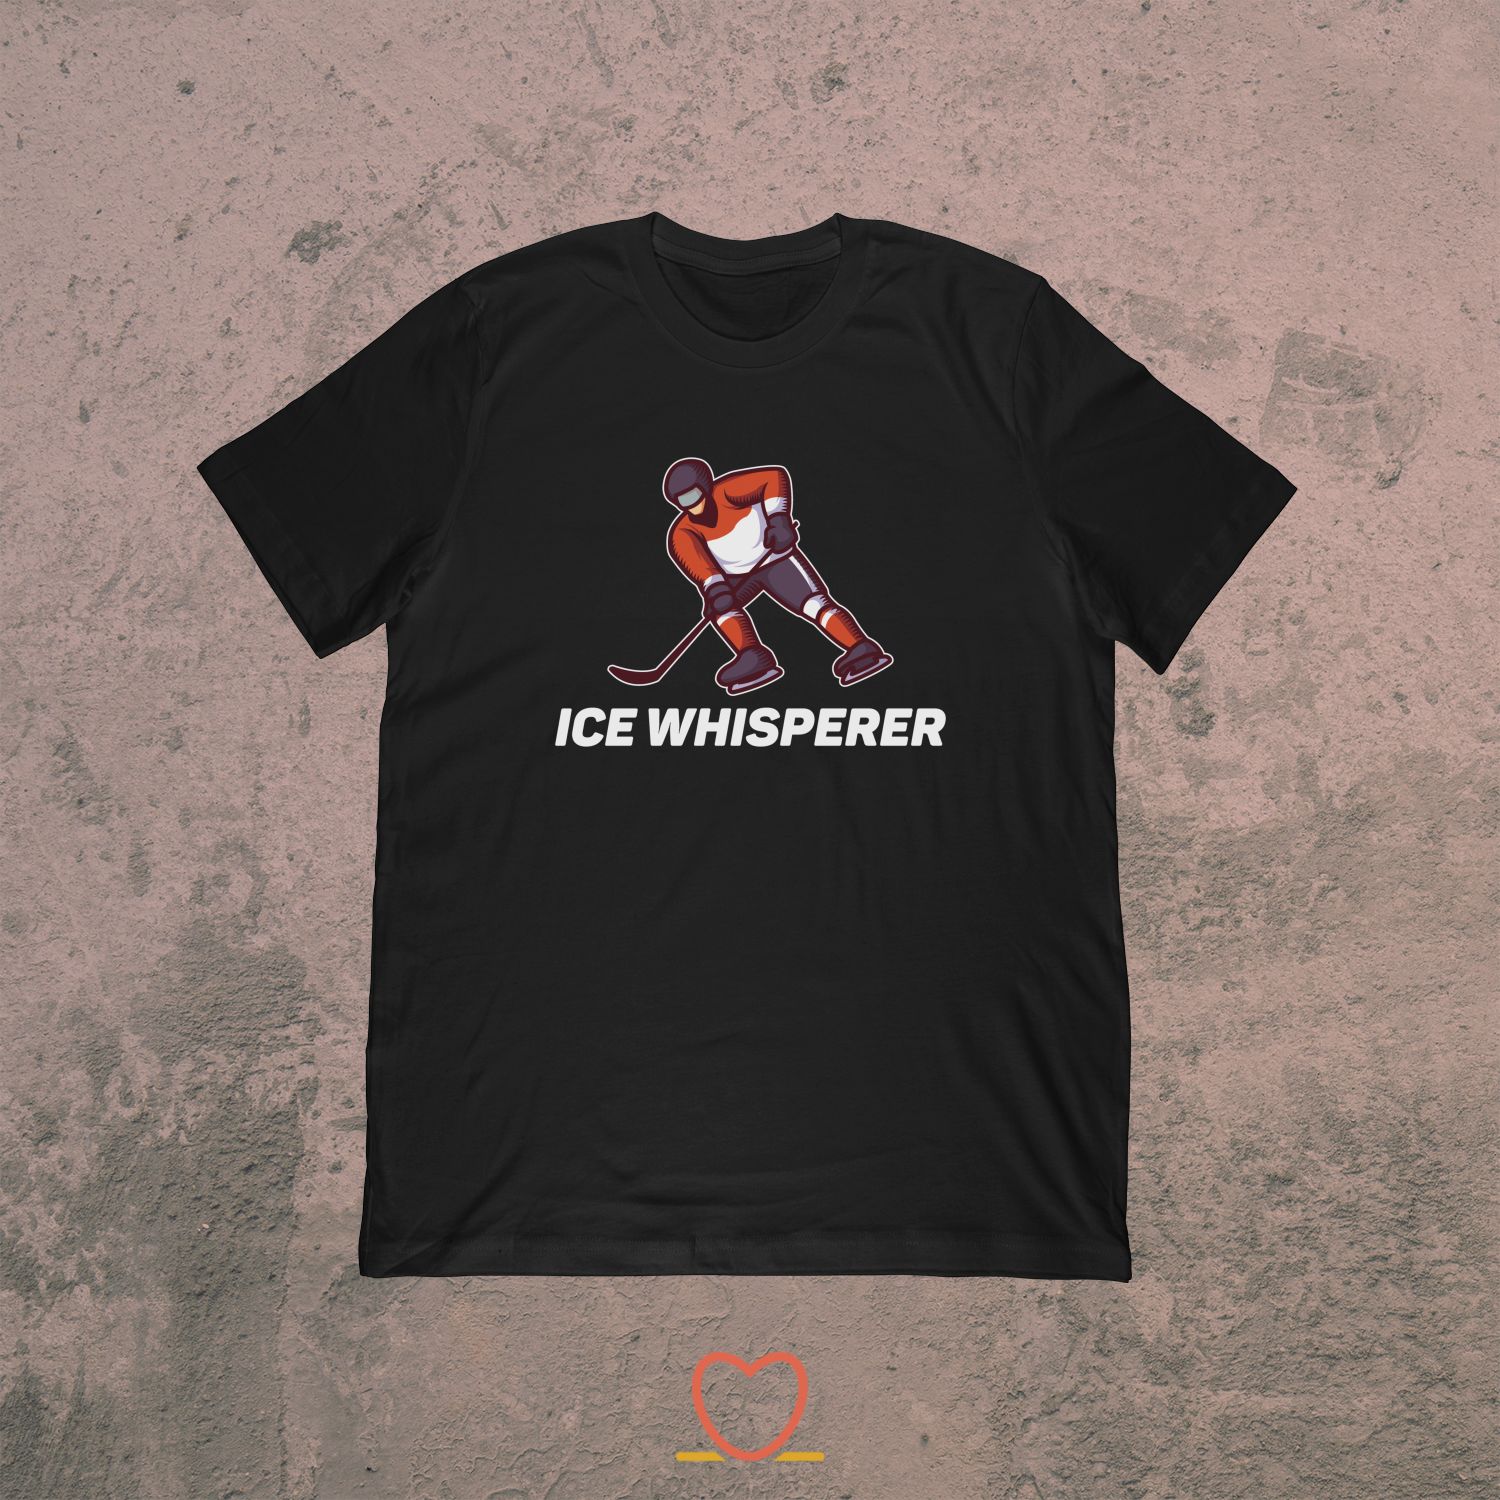 Ice Whisperer – Funny Ice Hockey Tee